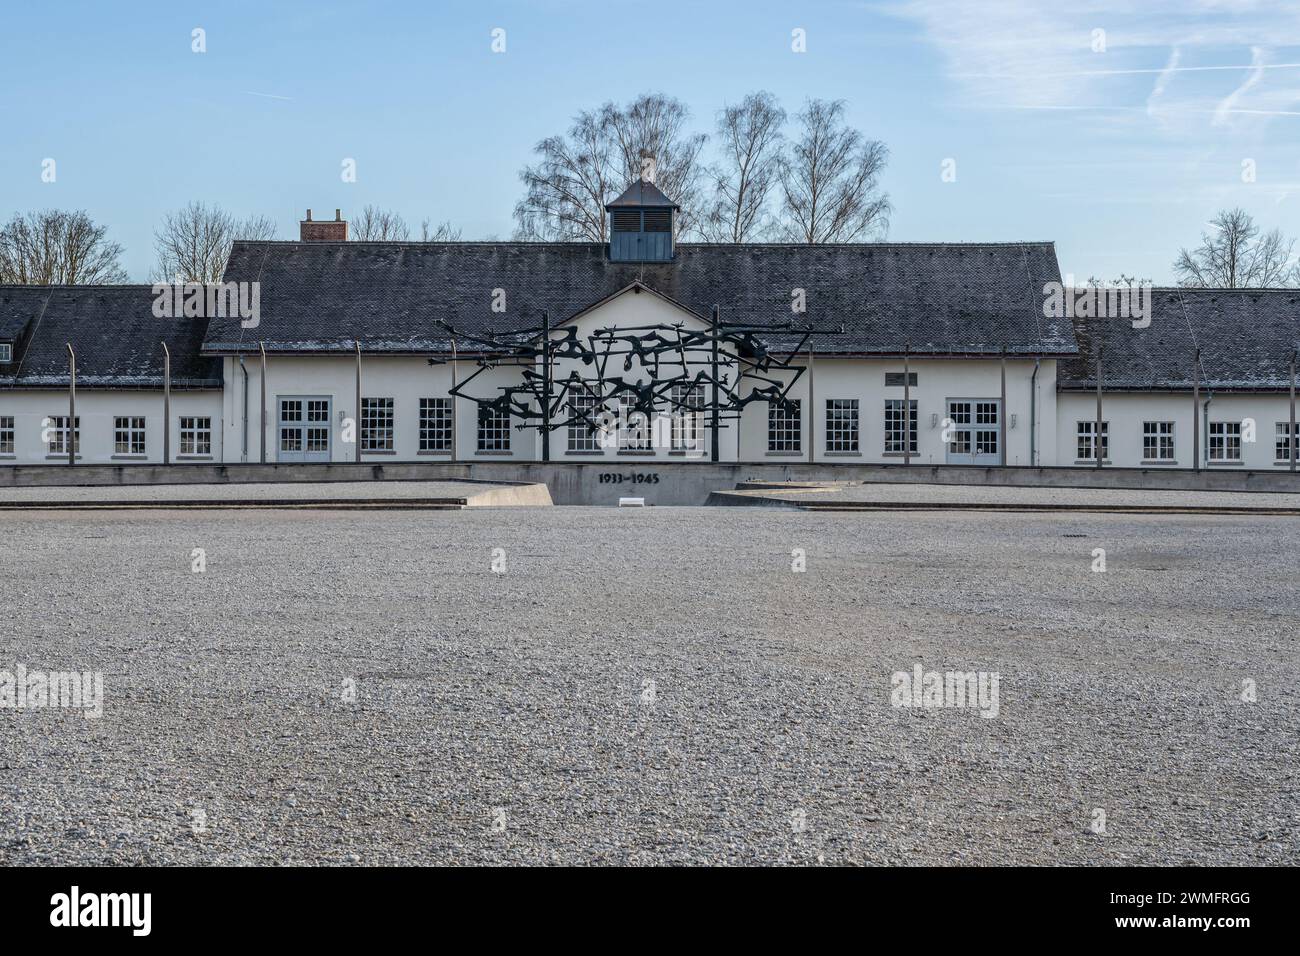 KZ-Gebäude Dachau in Deutschland. Stockfoto